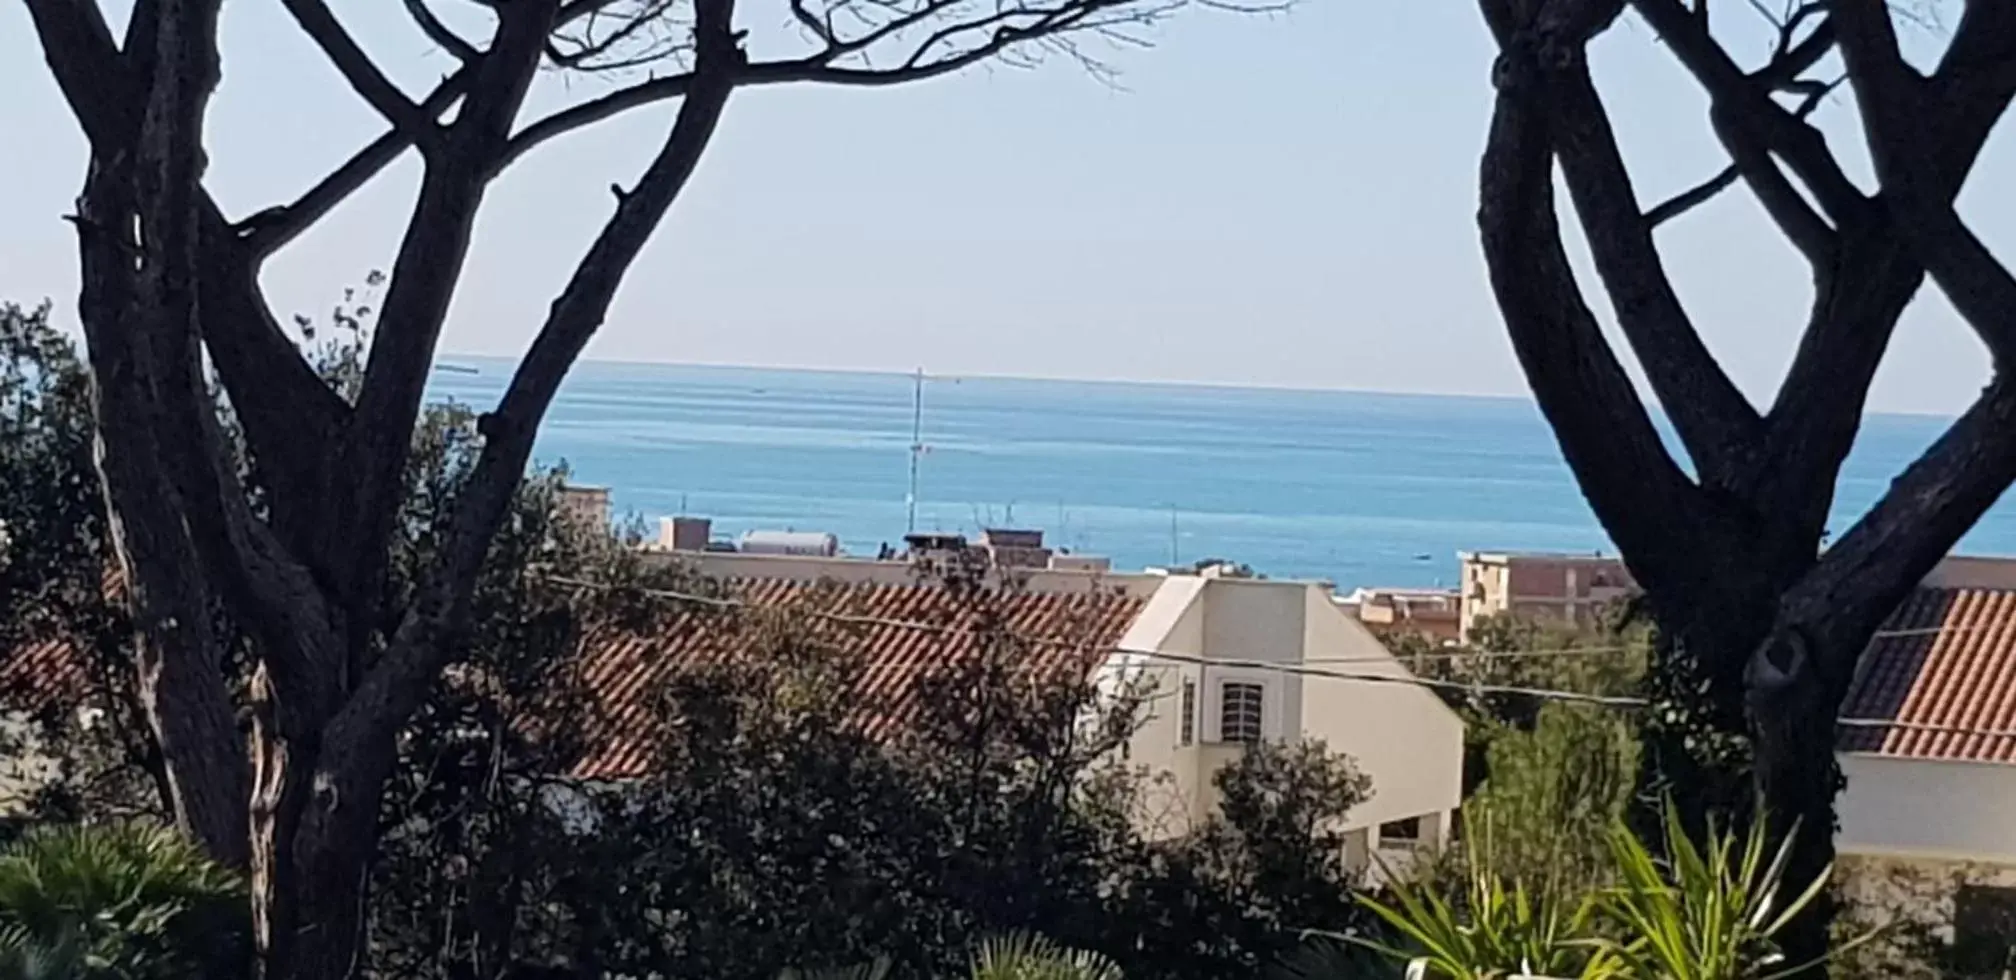 Sea View in Hotel Parco Dei Principi